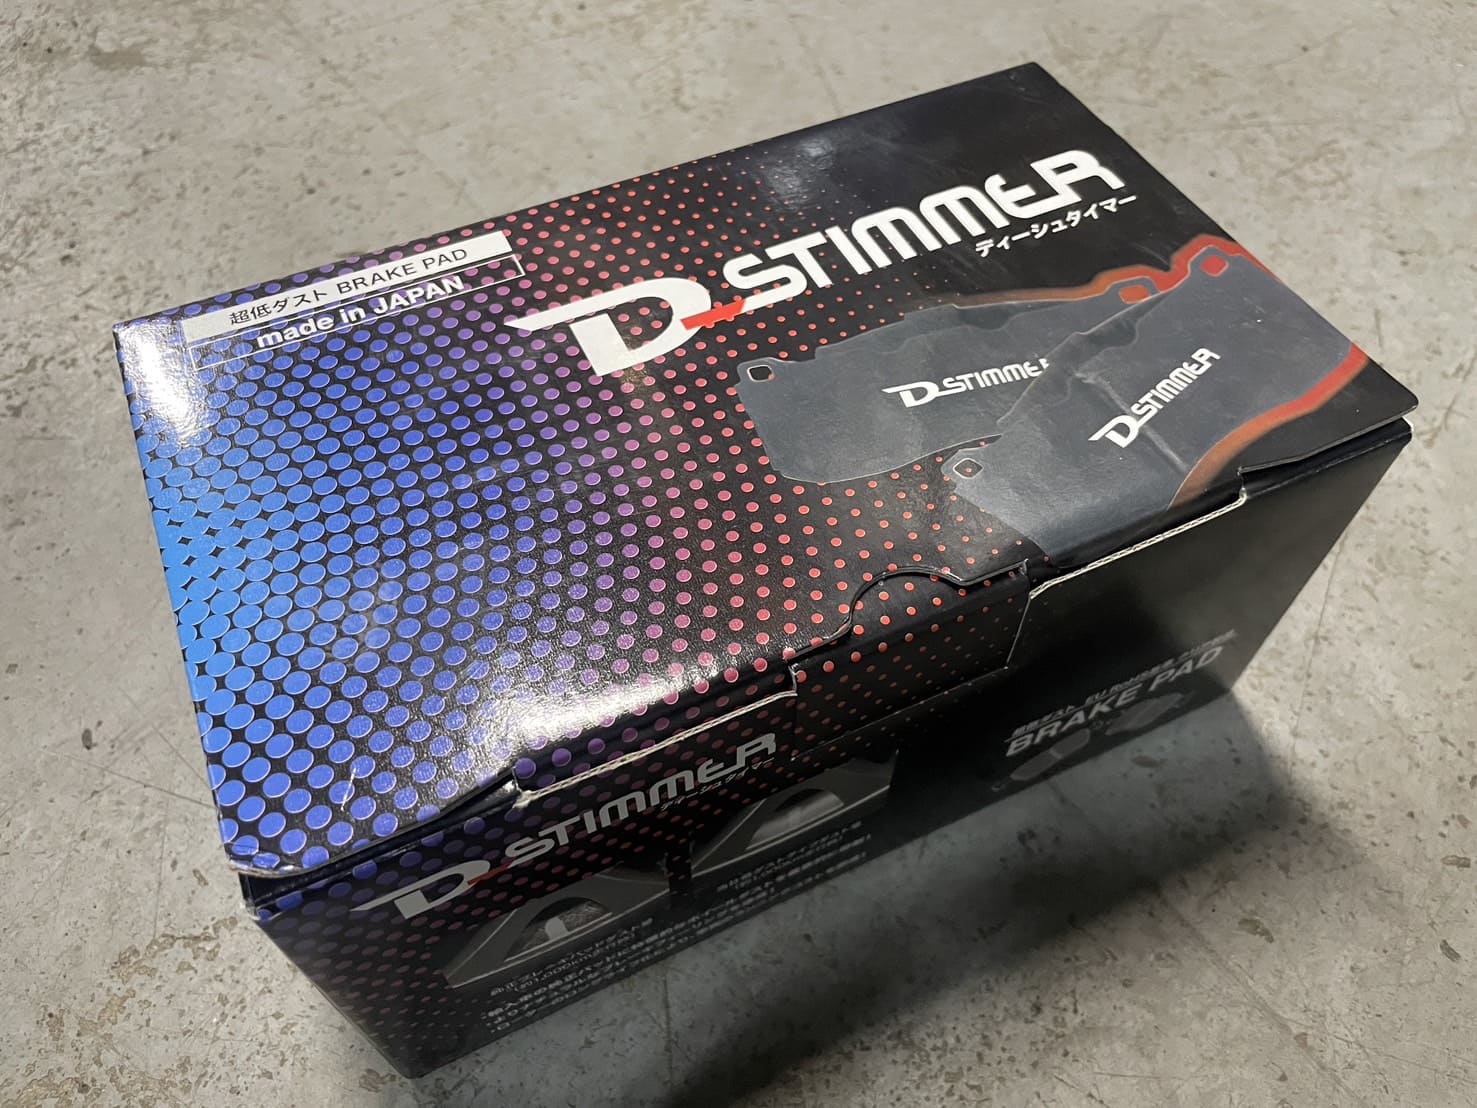 D-STIMMER（ディーシュタイマー）製のブレーキパッドとBMW純正パーツの費用比較